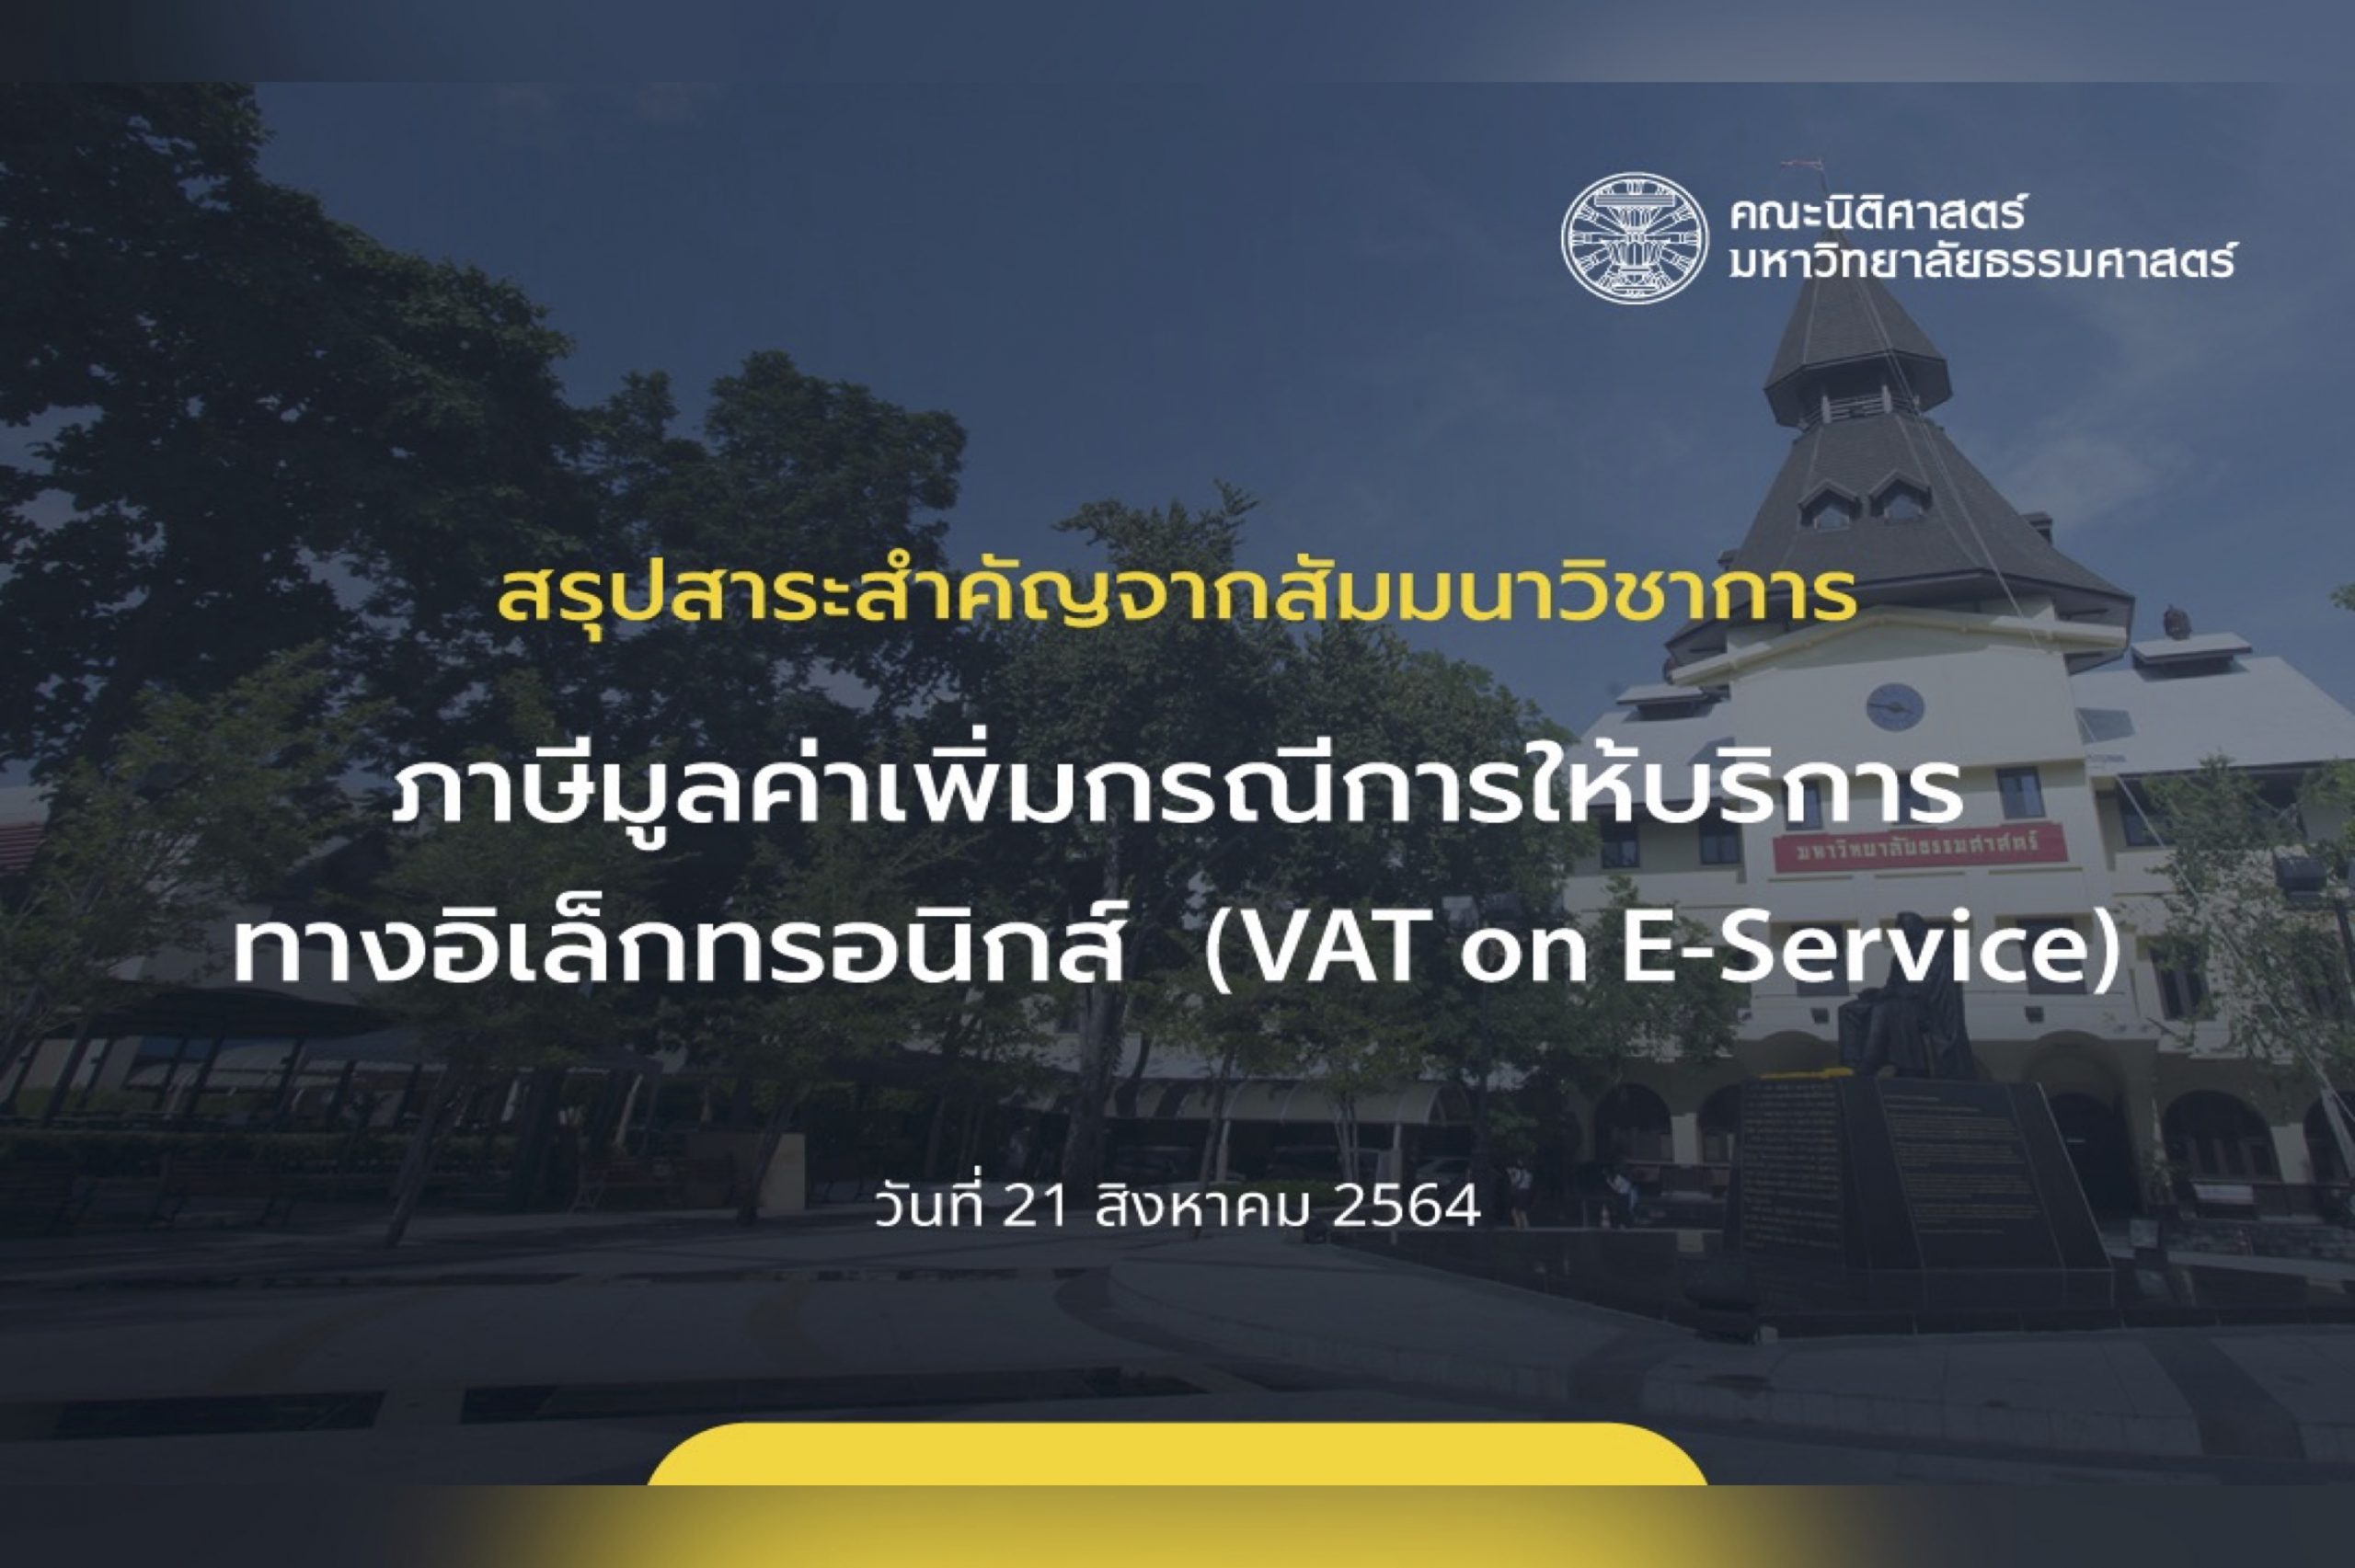 สรุปสาระสำคัญจากสัมมนาทางวิชาการเรื่อง “ภาษีมูลค่าเพิ่มกรณีการให้บริการทางลิเล็กทรอนิกส์ (VAT on E-Service)”